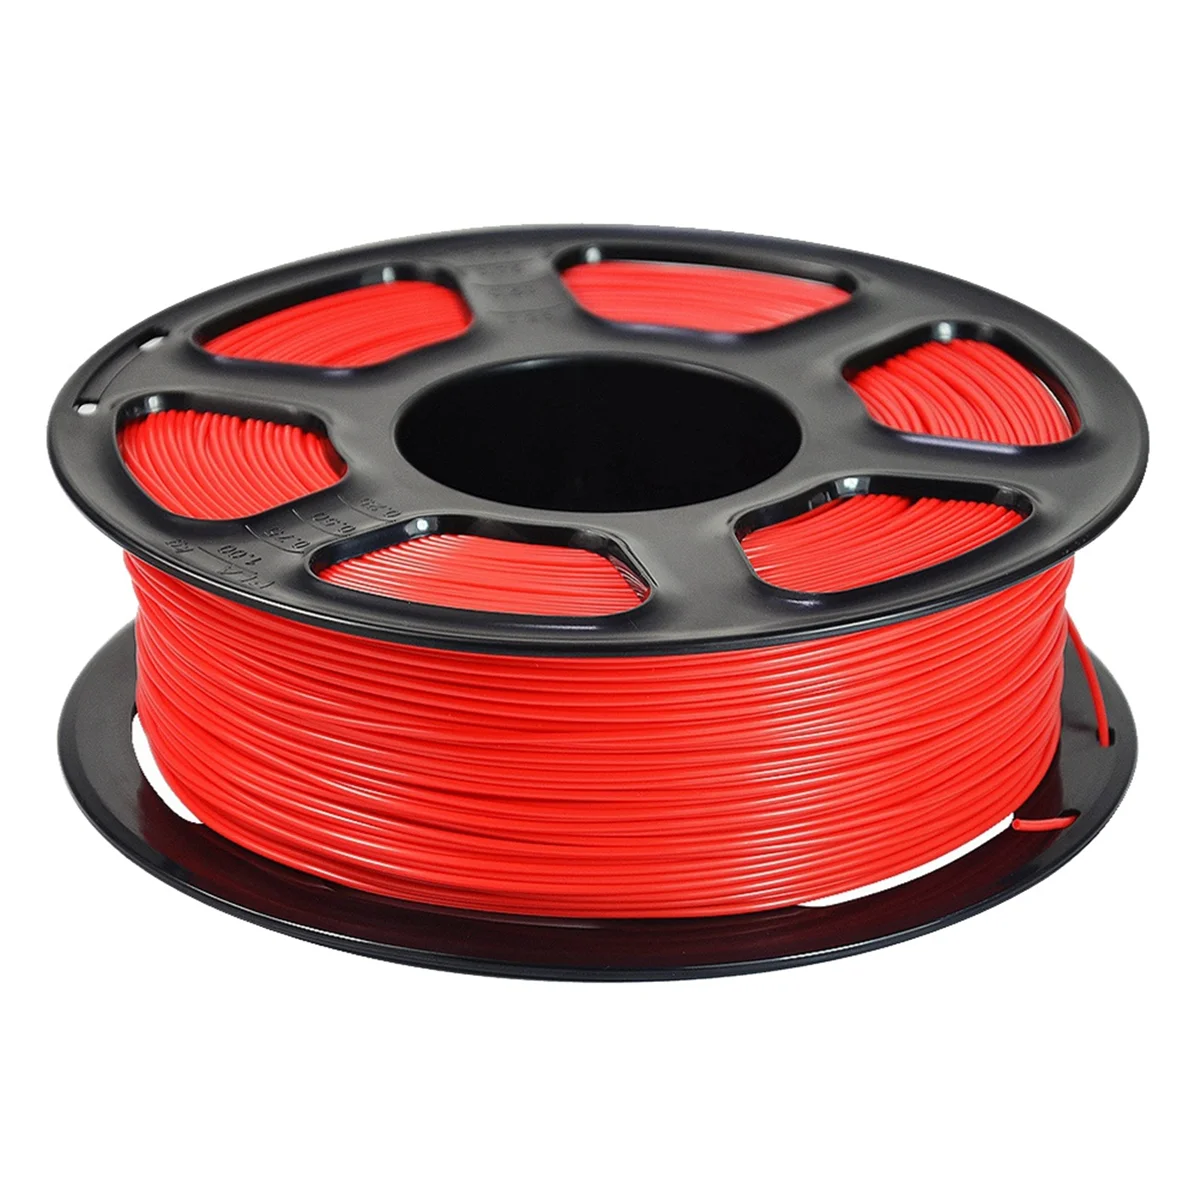 

PLA 3D Printer Filament, Neatly Wound PLA Filament 1.75mm Fit Most FDM 3D Printers,1KG Spool PLA Filament Red